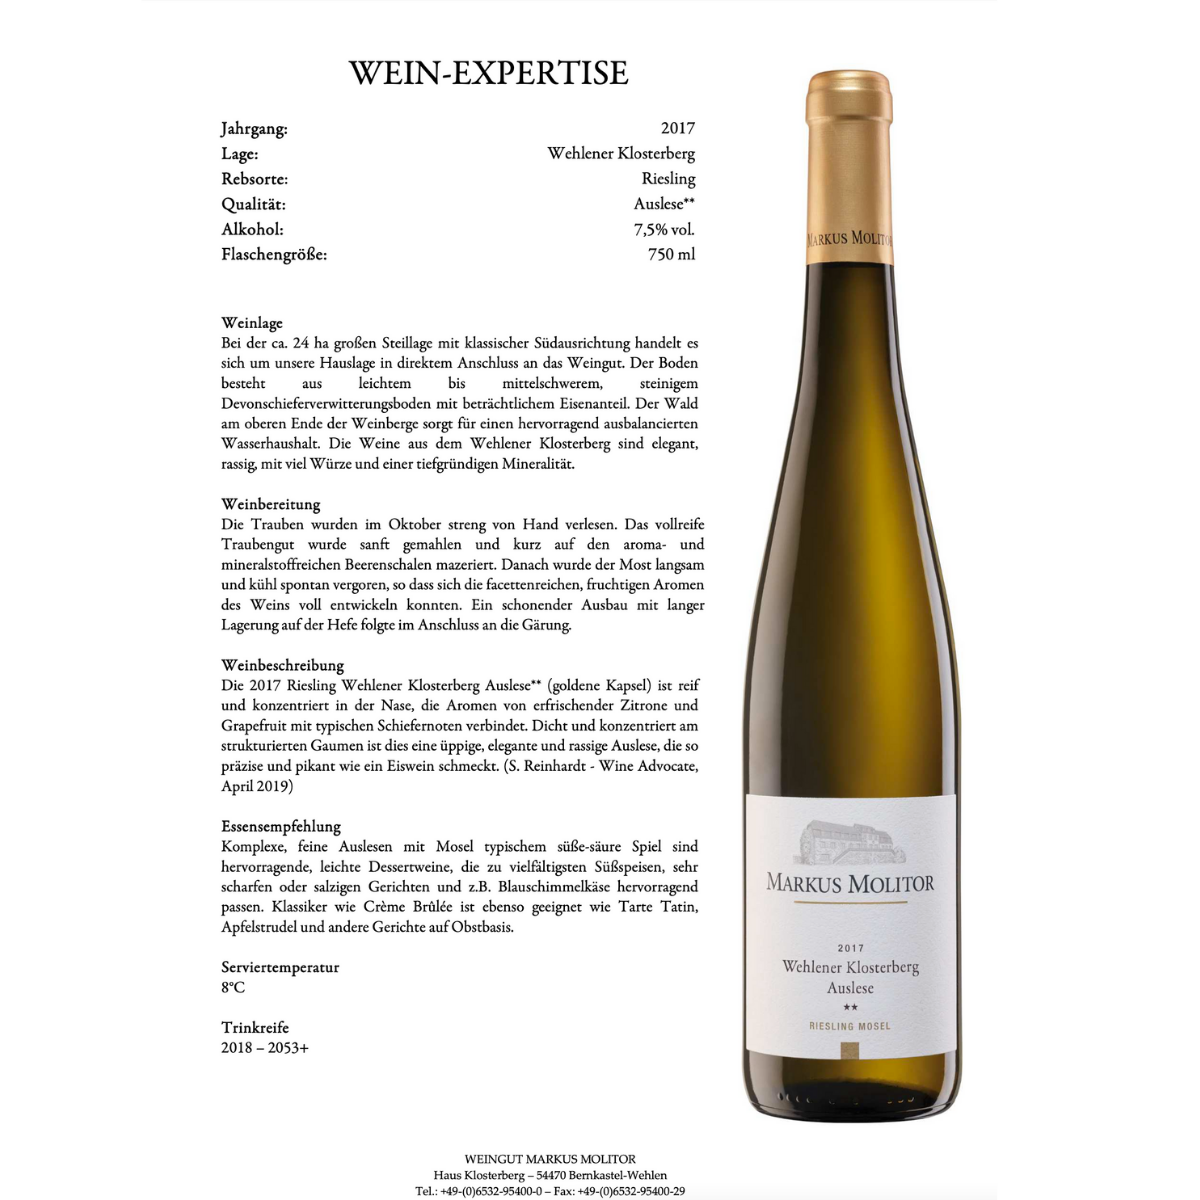 Markus Molitor Riesling Wein-Geschenkset "taste the difference"